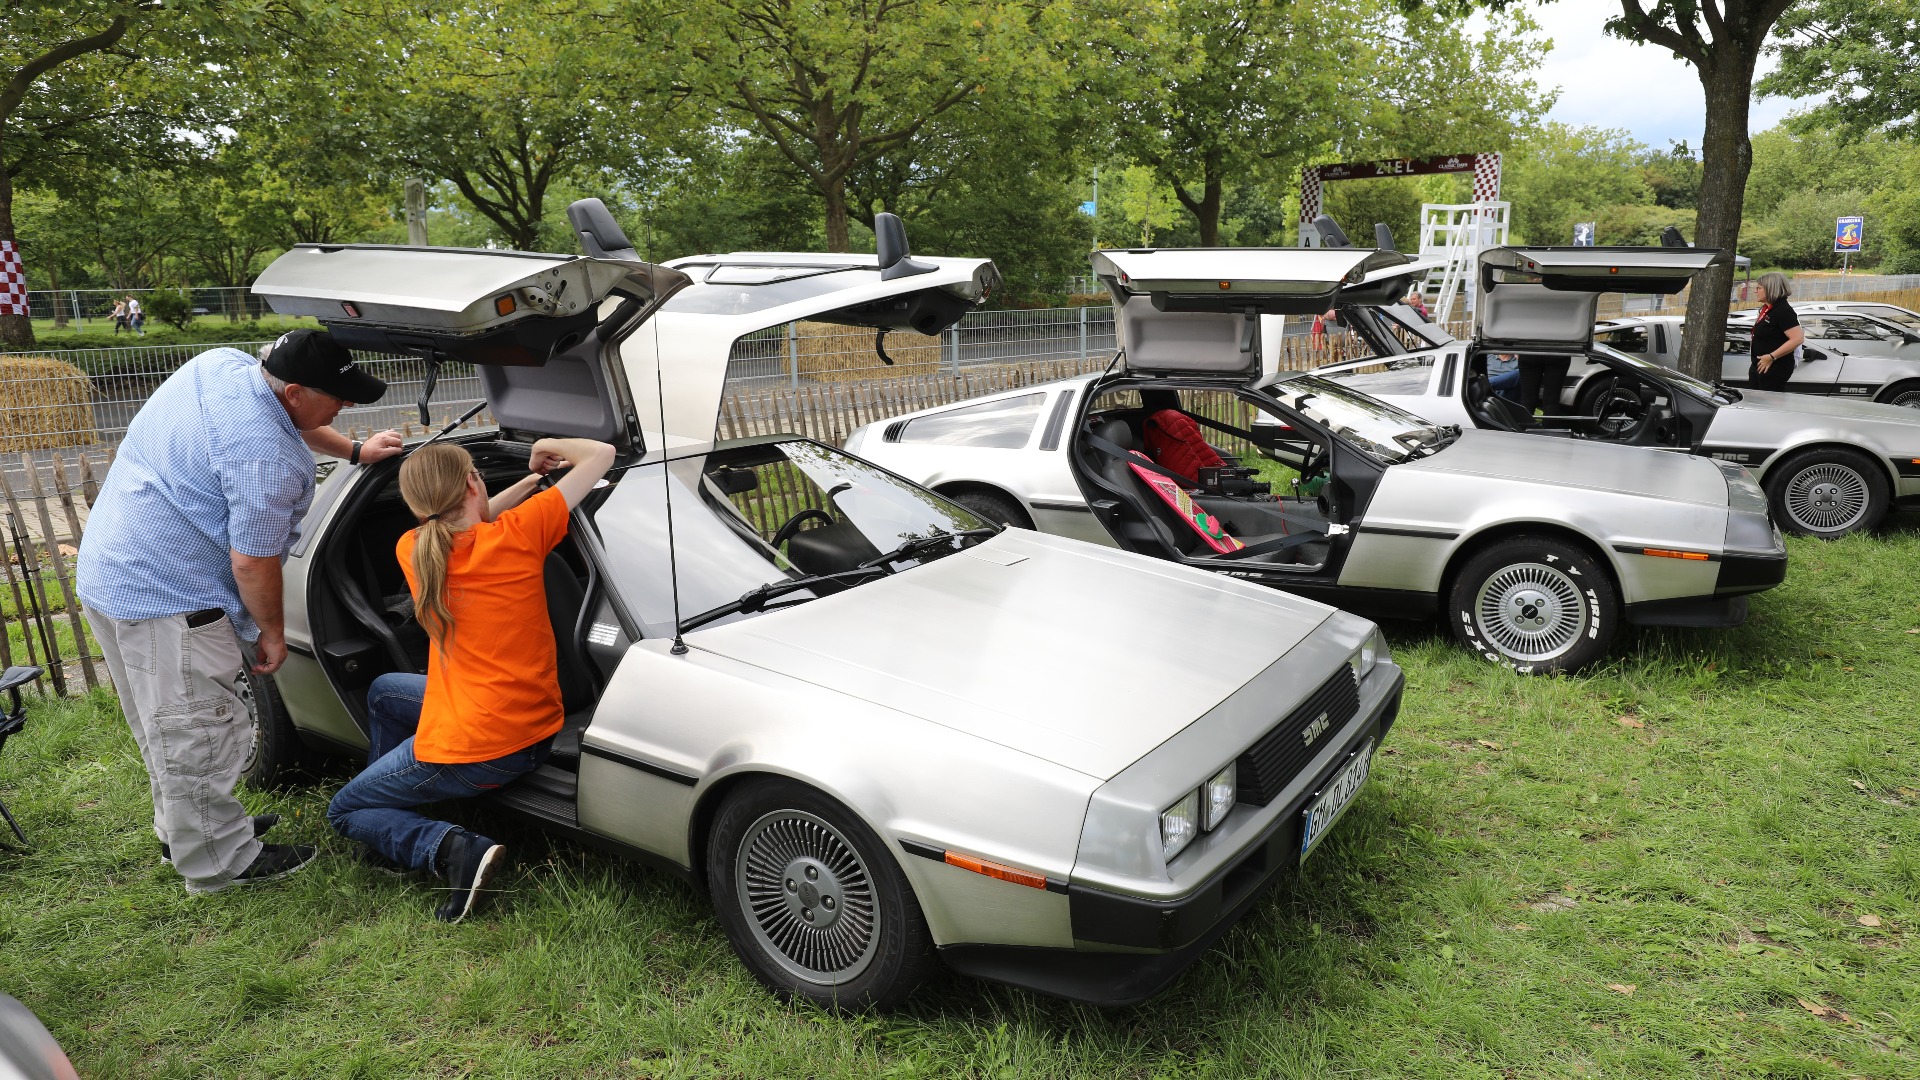 Hele 10 ulike DeLorean stod parkert ved siden av hverandre i klubbdelen av parken.